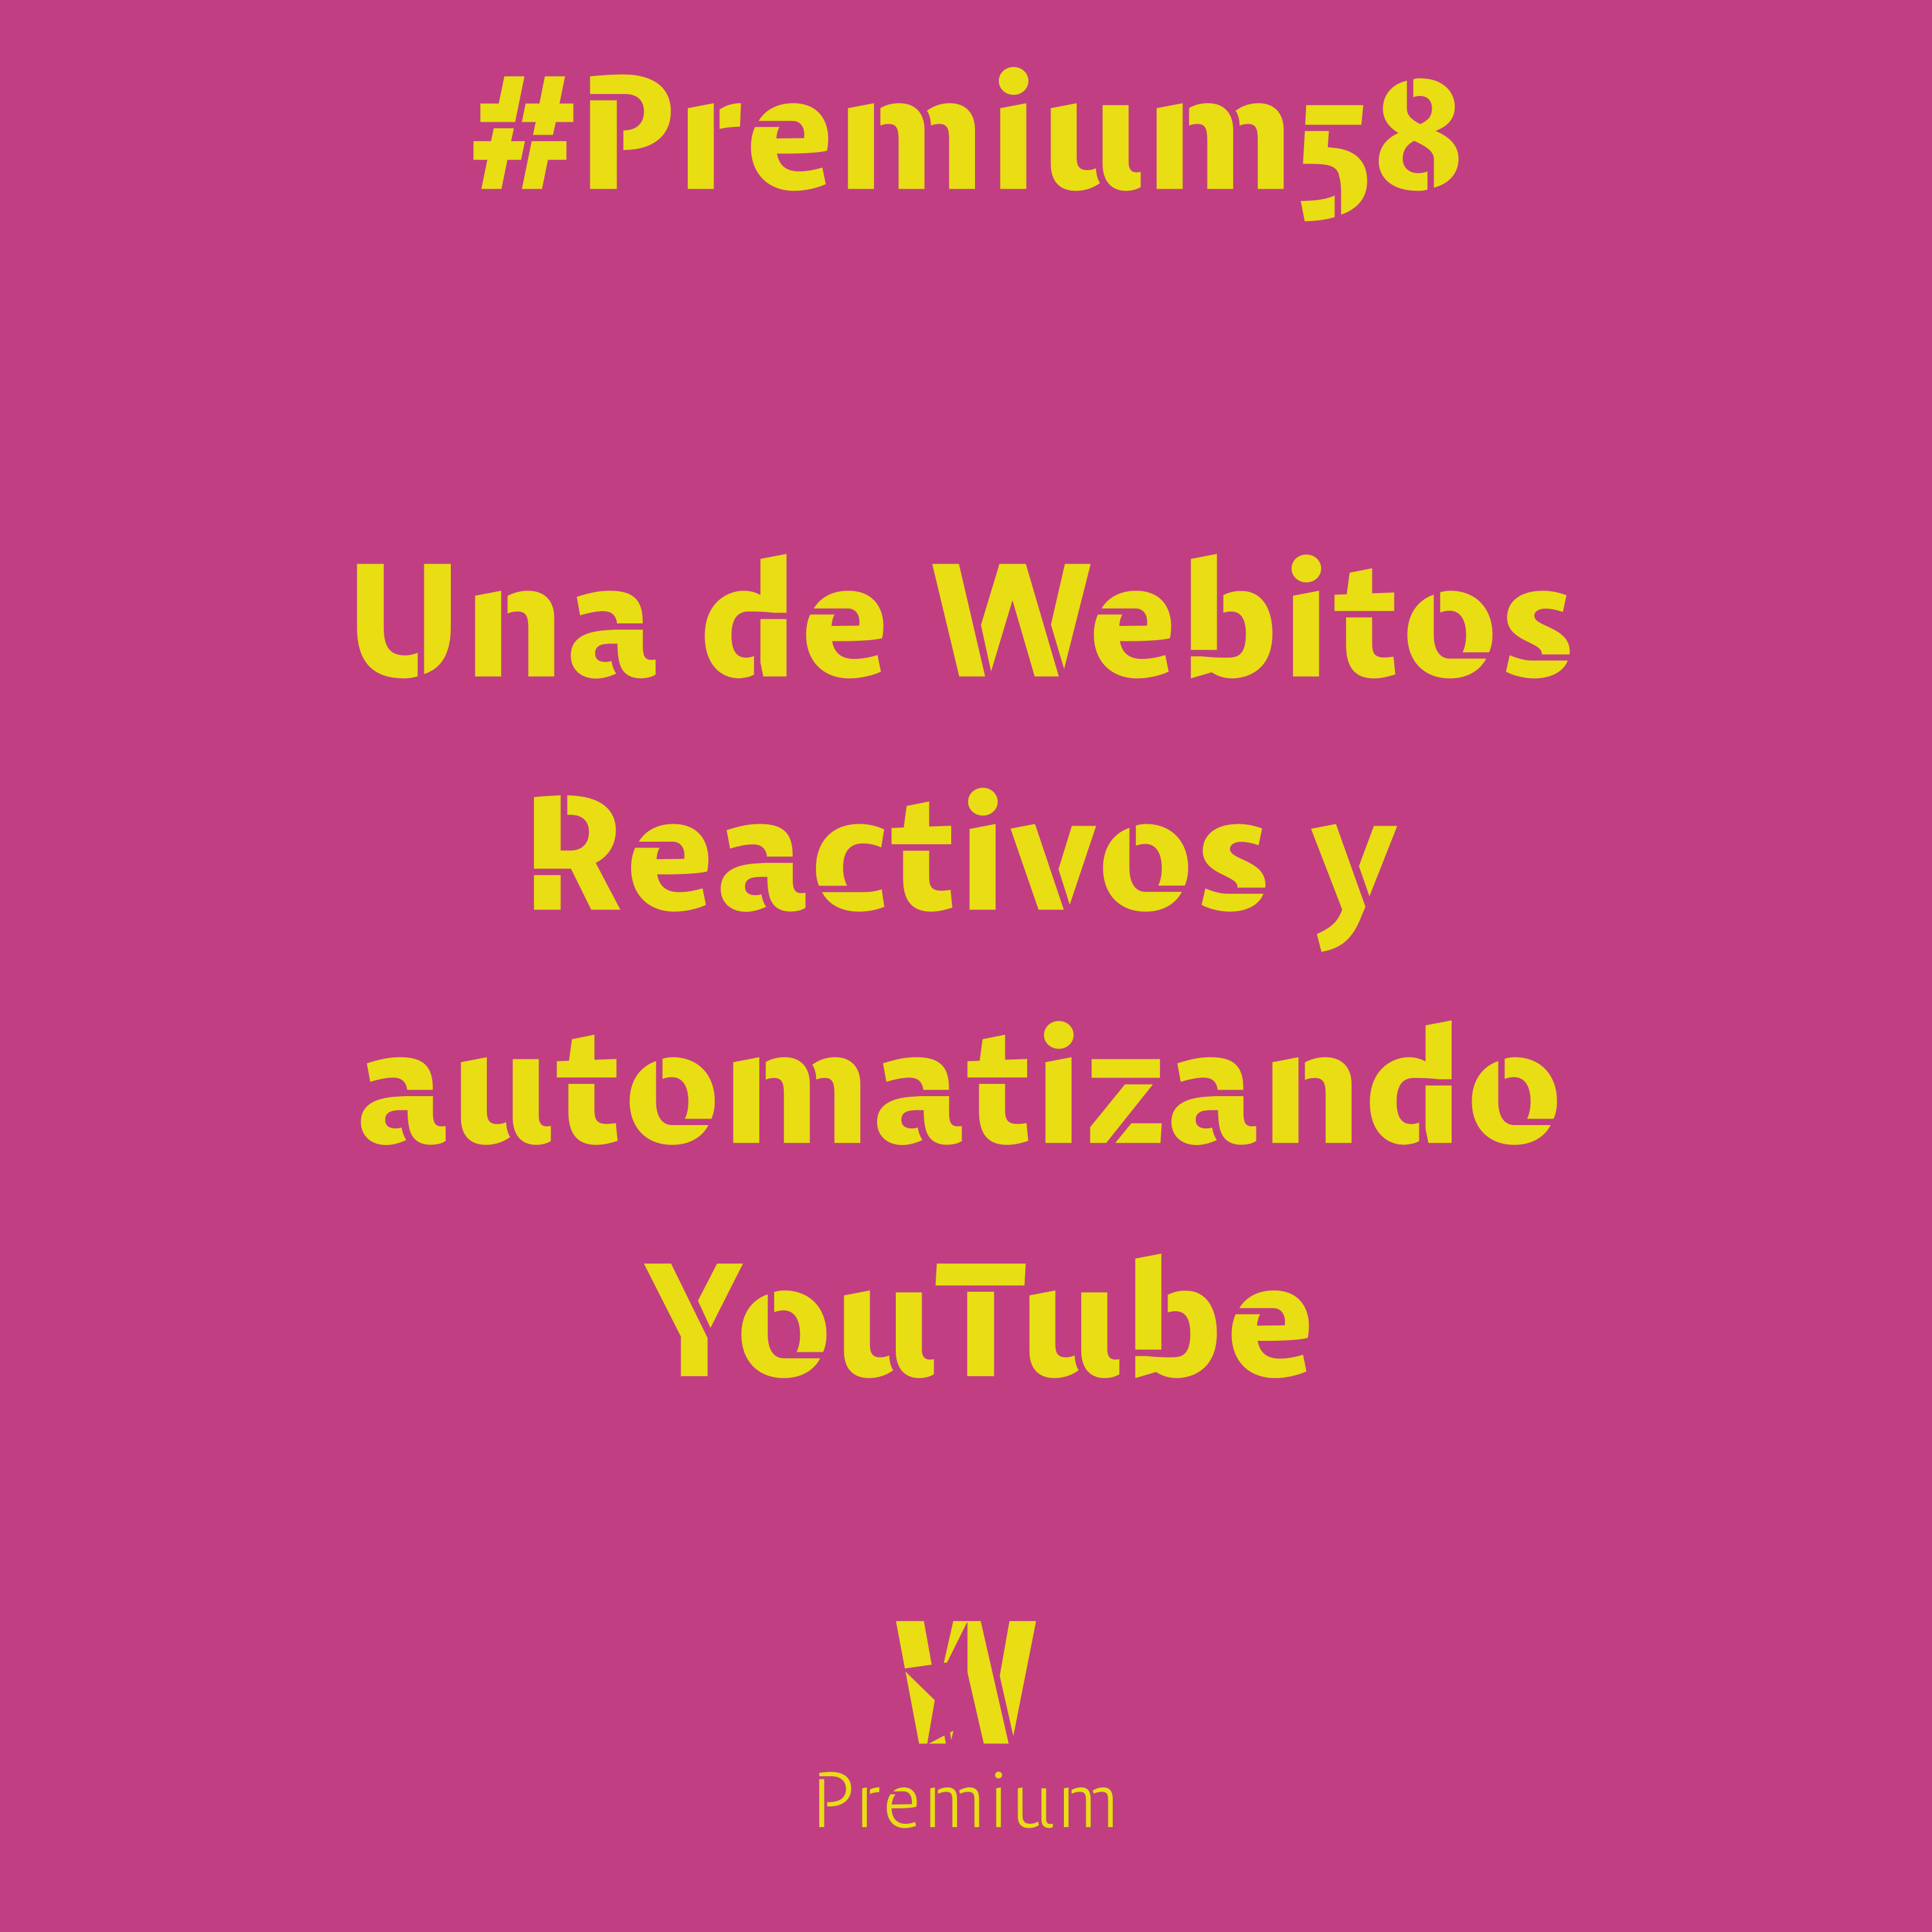 #Premium58 - Una de Webitos Reactivos y automatizando YouTube